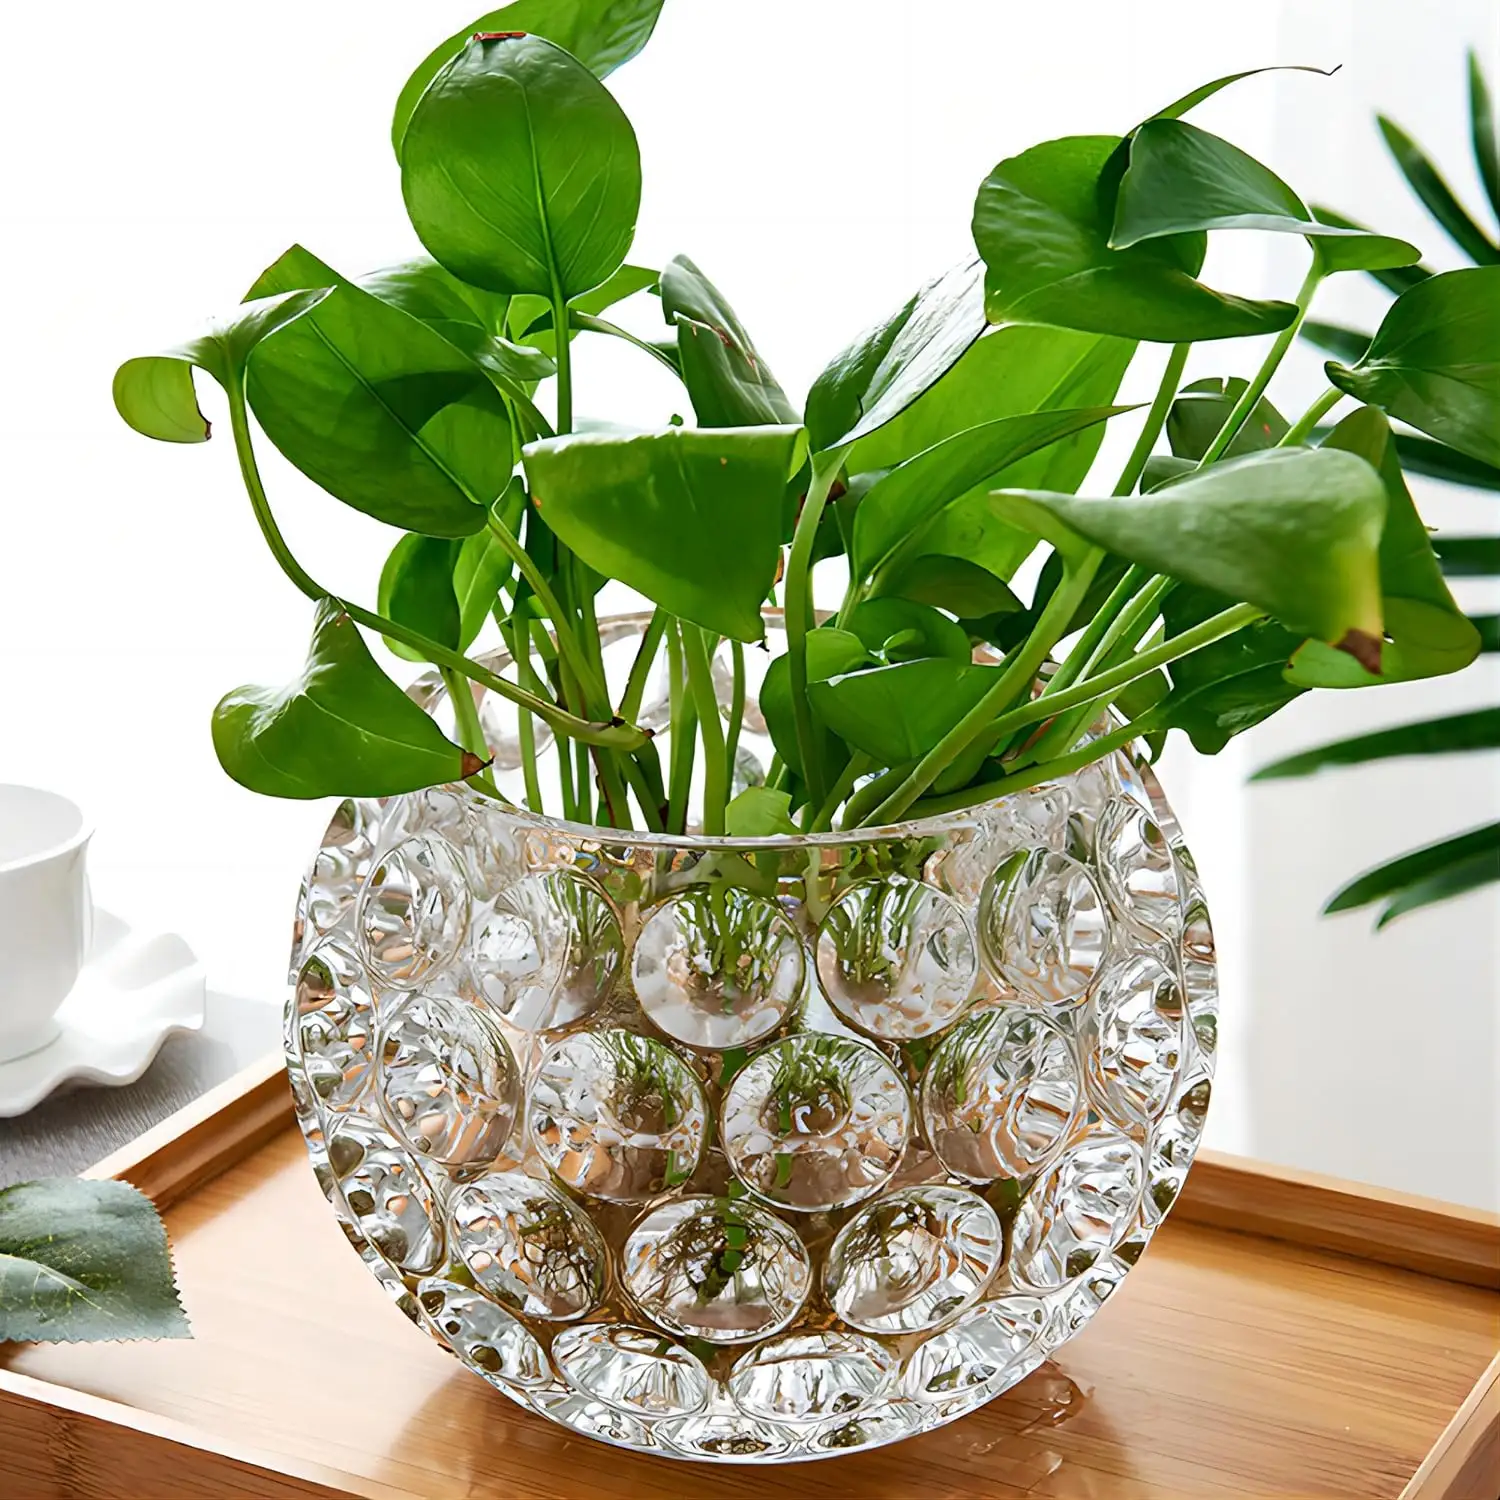 Disposizione floreale a base d'acqua e fiori secchi ornamenti decorativi Nordic moderno vaso di vetro